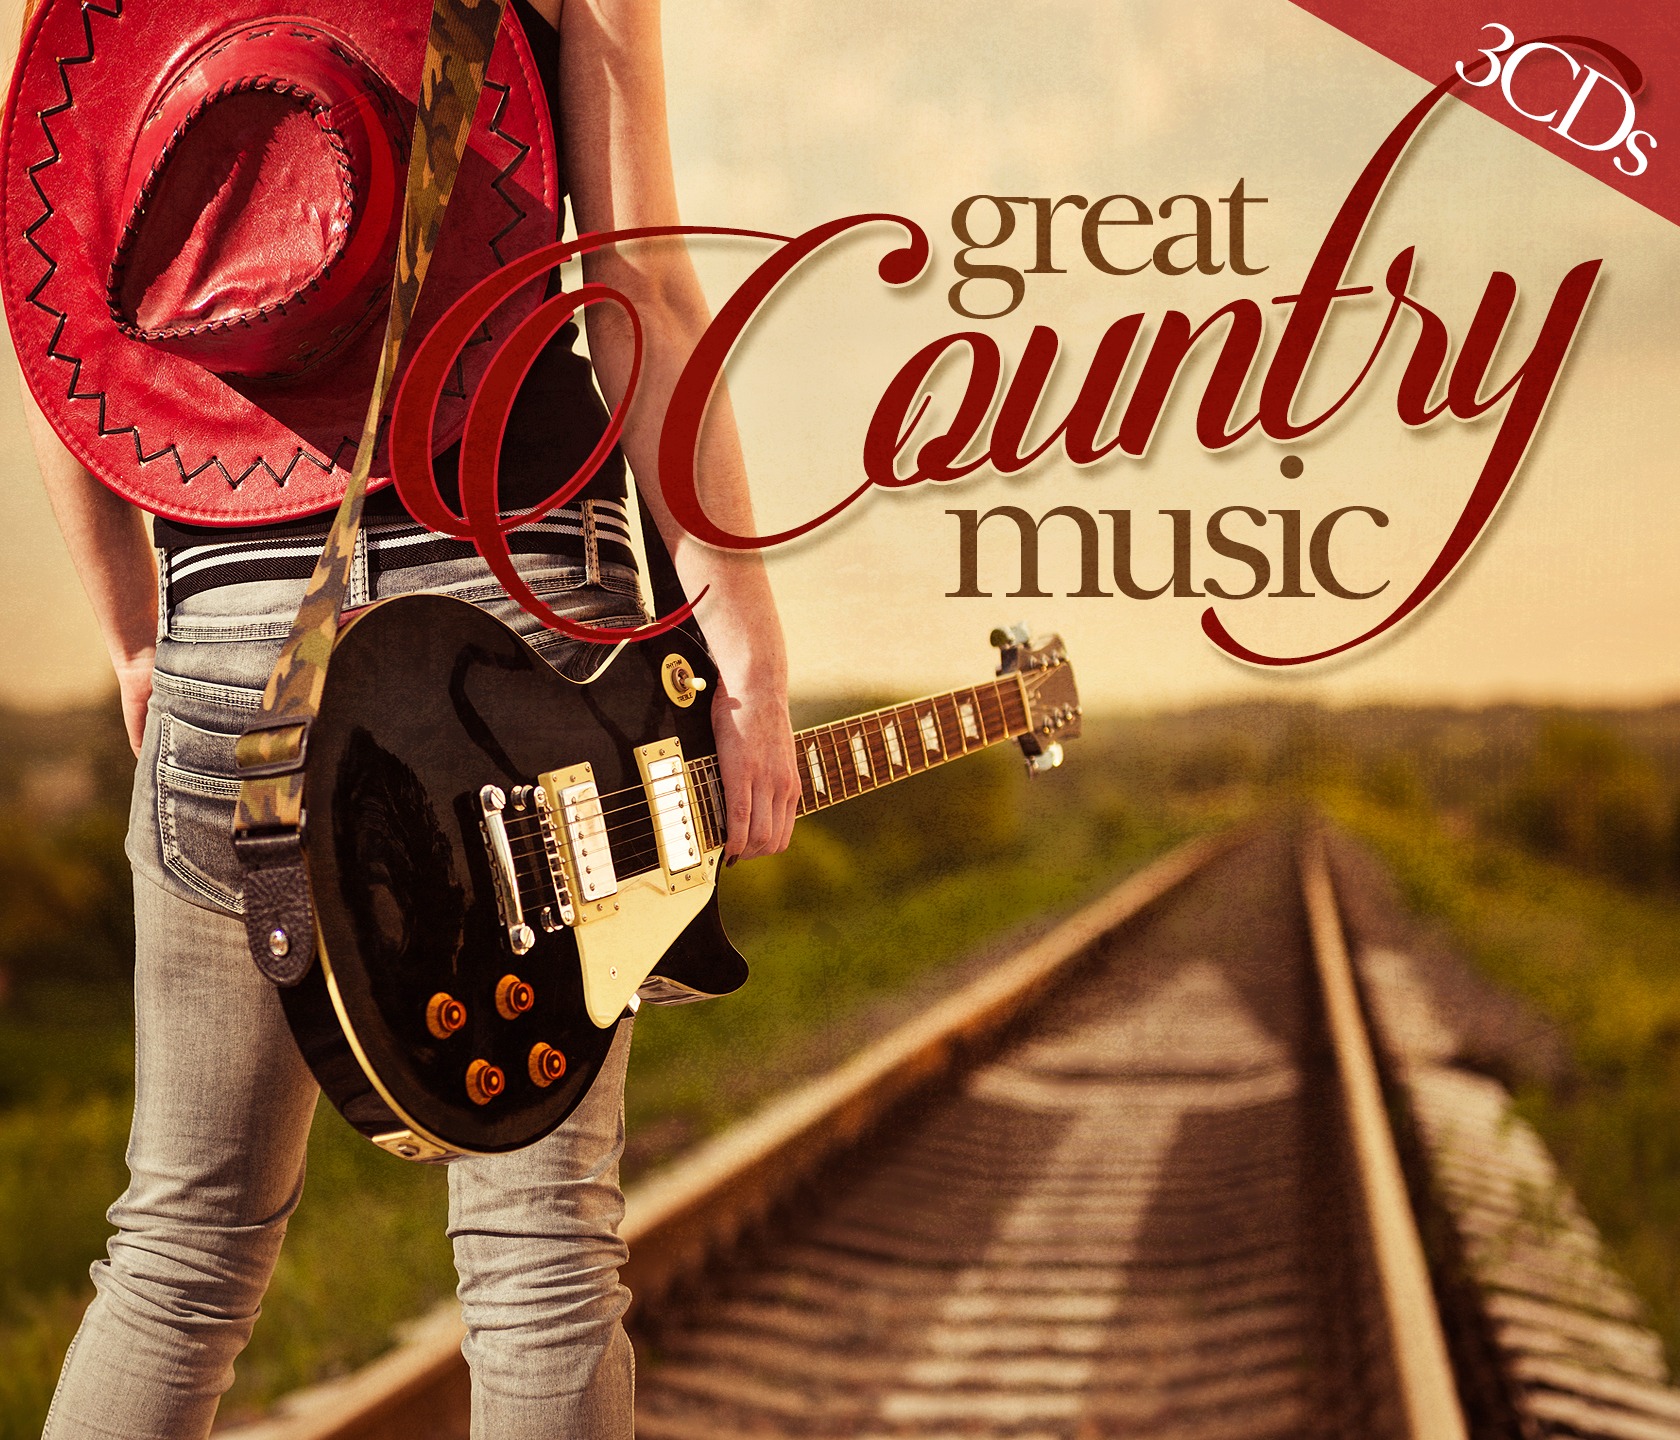 Country download. Кантри стиль музыки. Country Music обложка. Кантри музыкальные альбомы. Обложка для музыки.